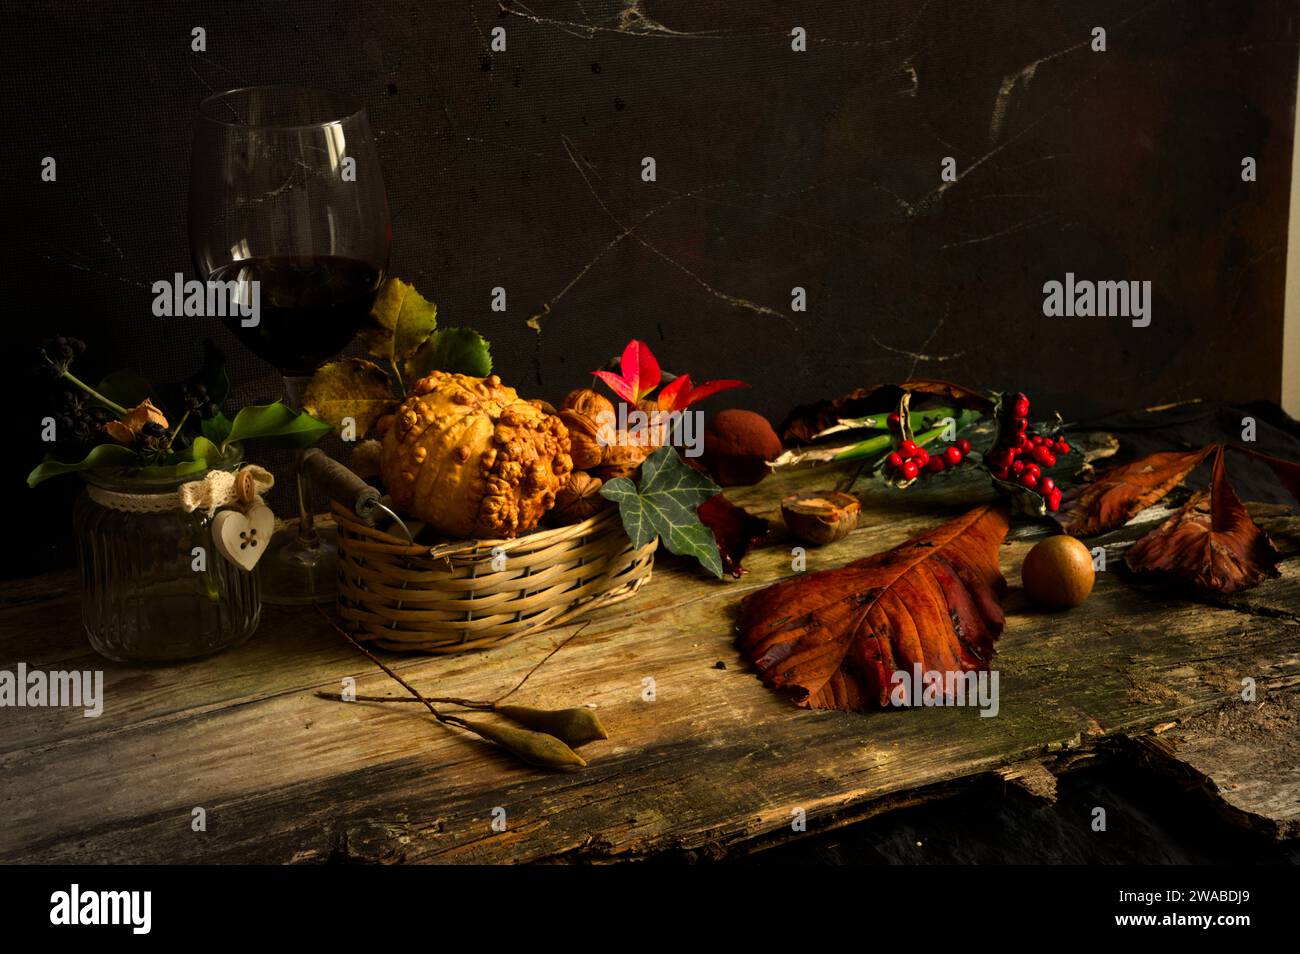 Naturaleza muerta flamenca con comida, flores, semillas. Clasificación amarilla y marrón Foto de stock